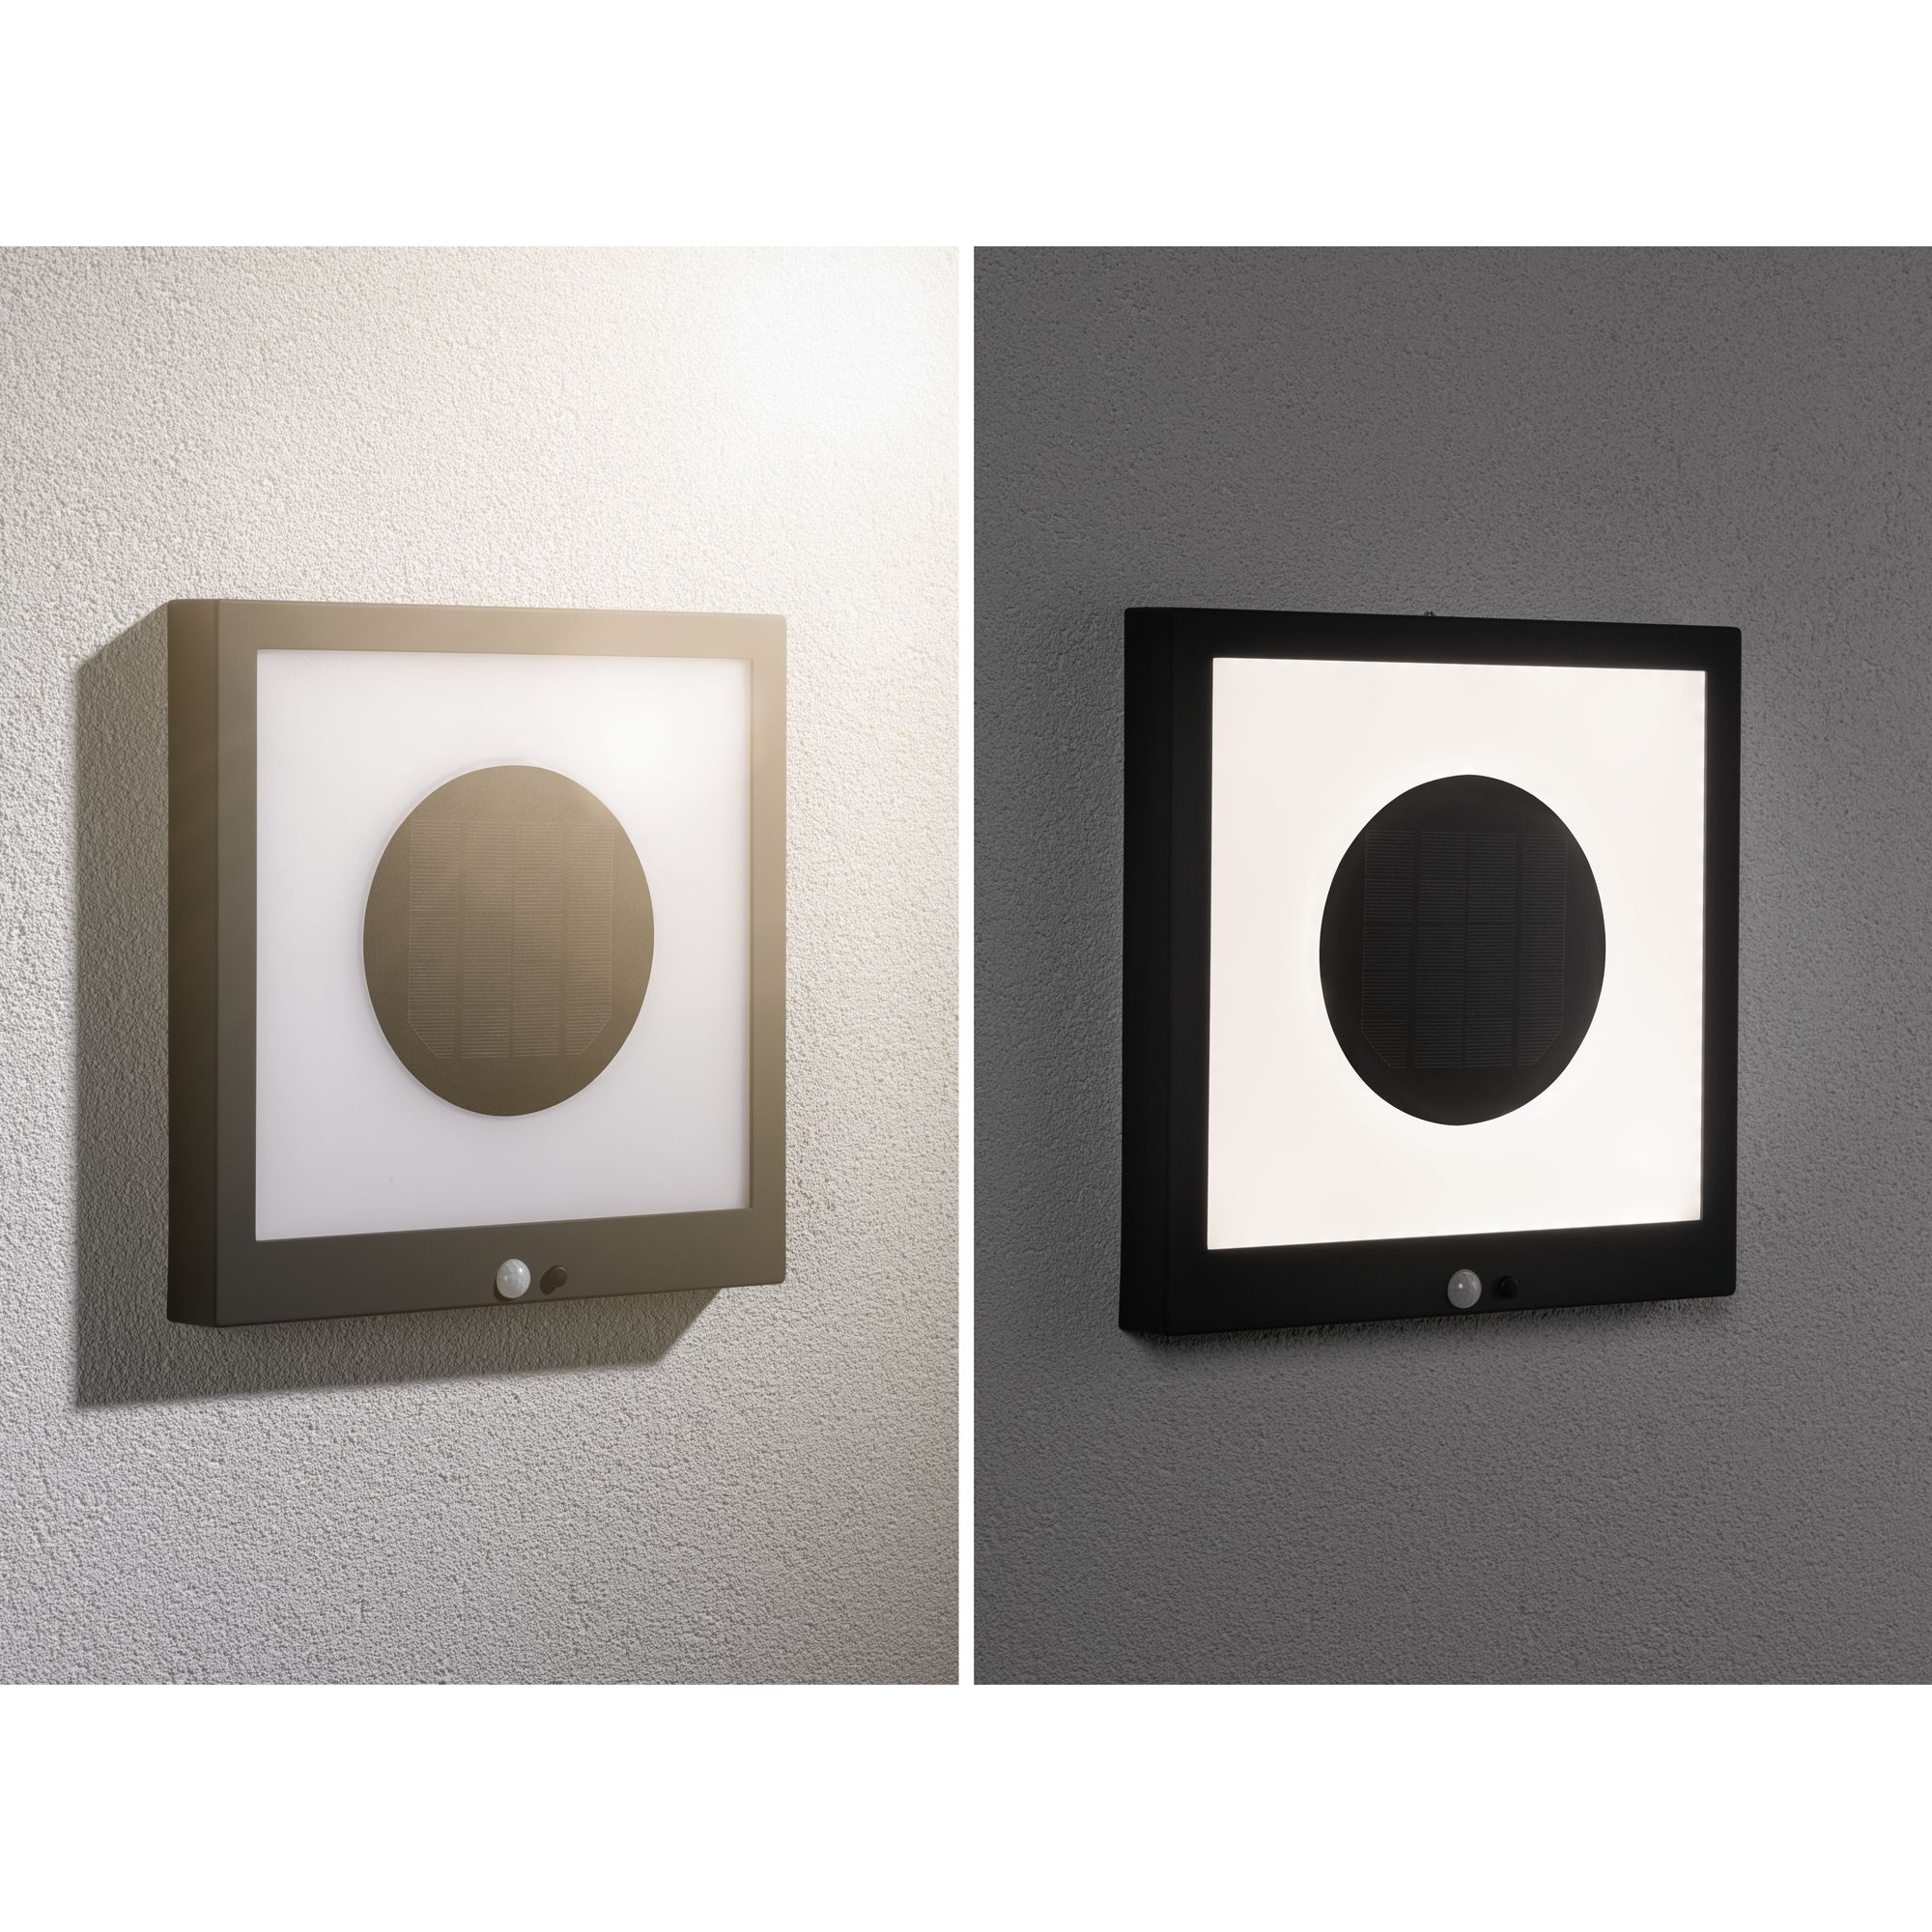 Solar-Wegeleuchte 'Mimmo' grau 9 x 6,3 x 5 cm + product picture